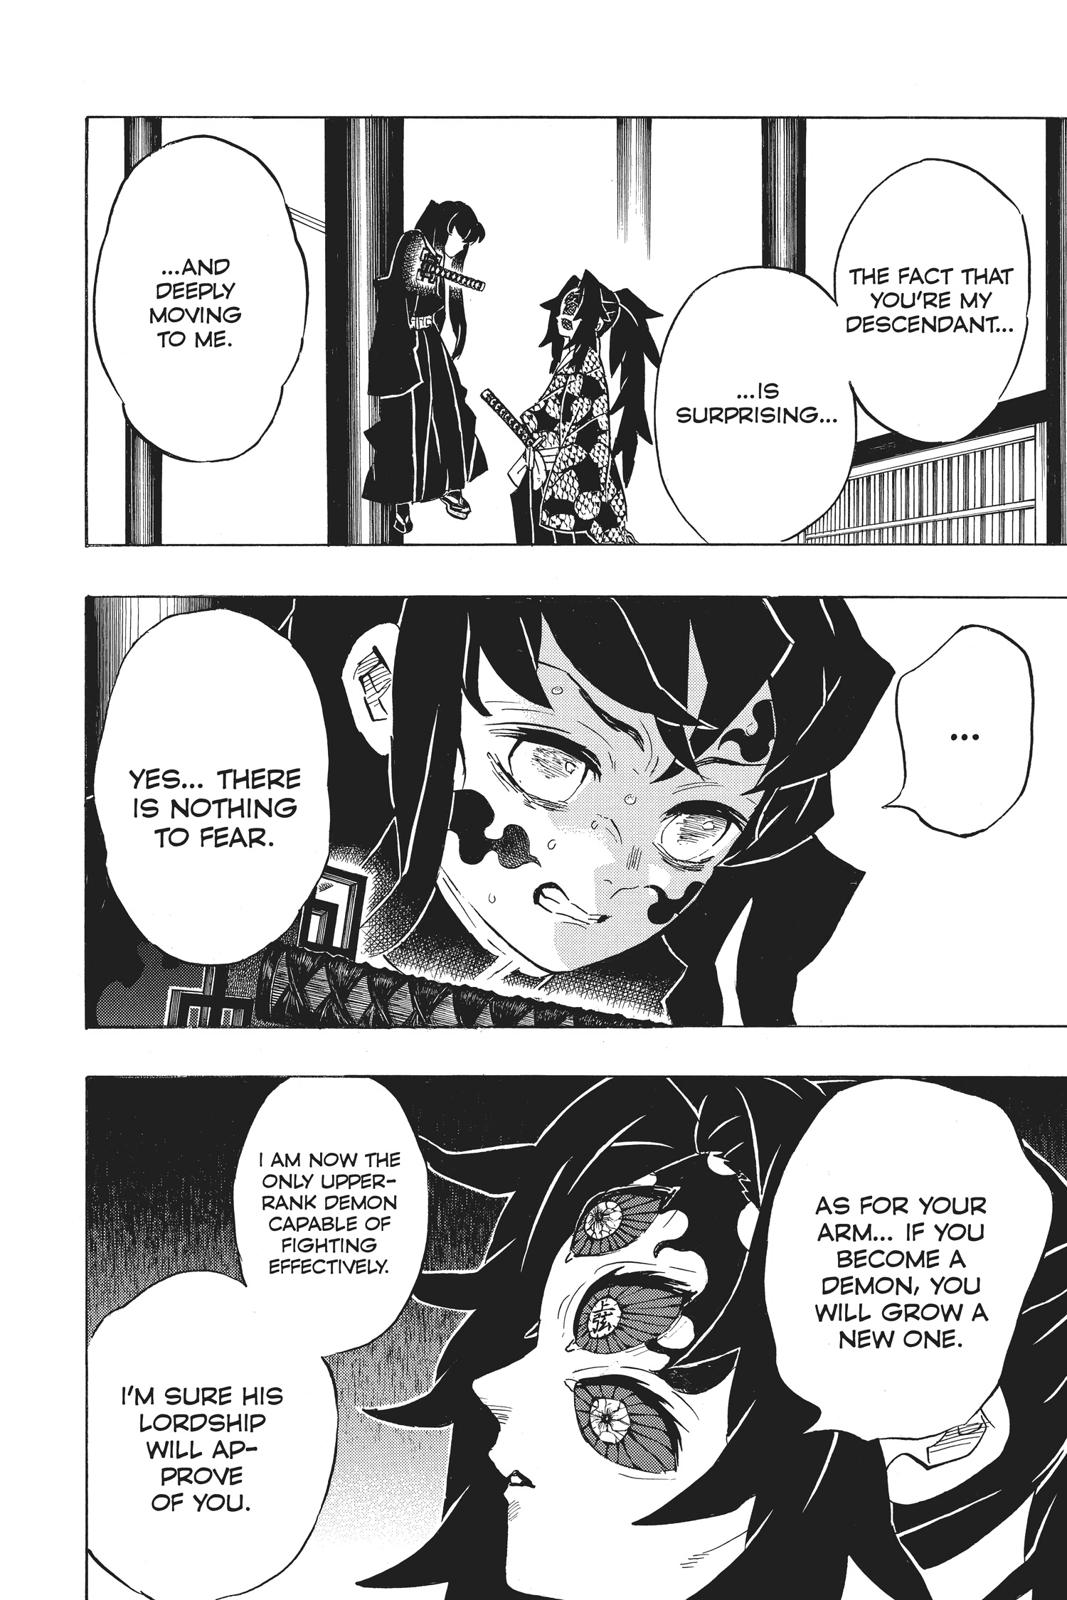 Demon Slayer Manga Manga Chapter - 166 - image 2